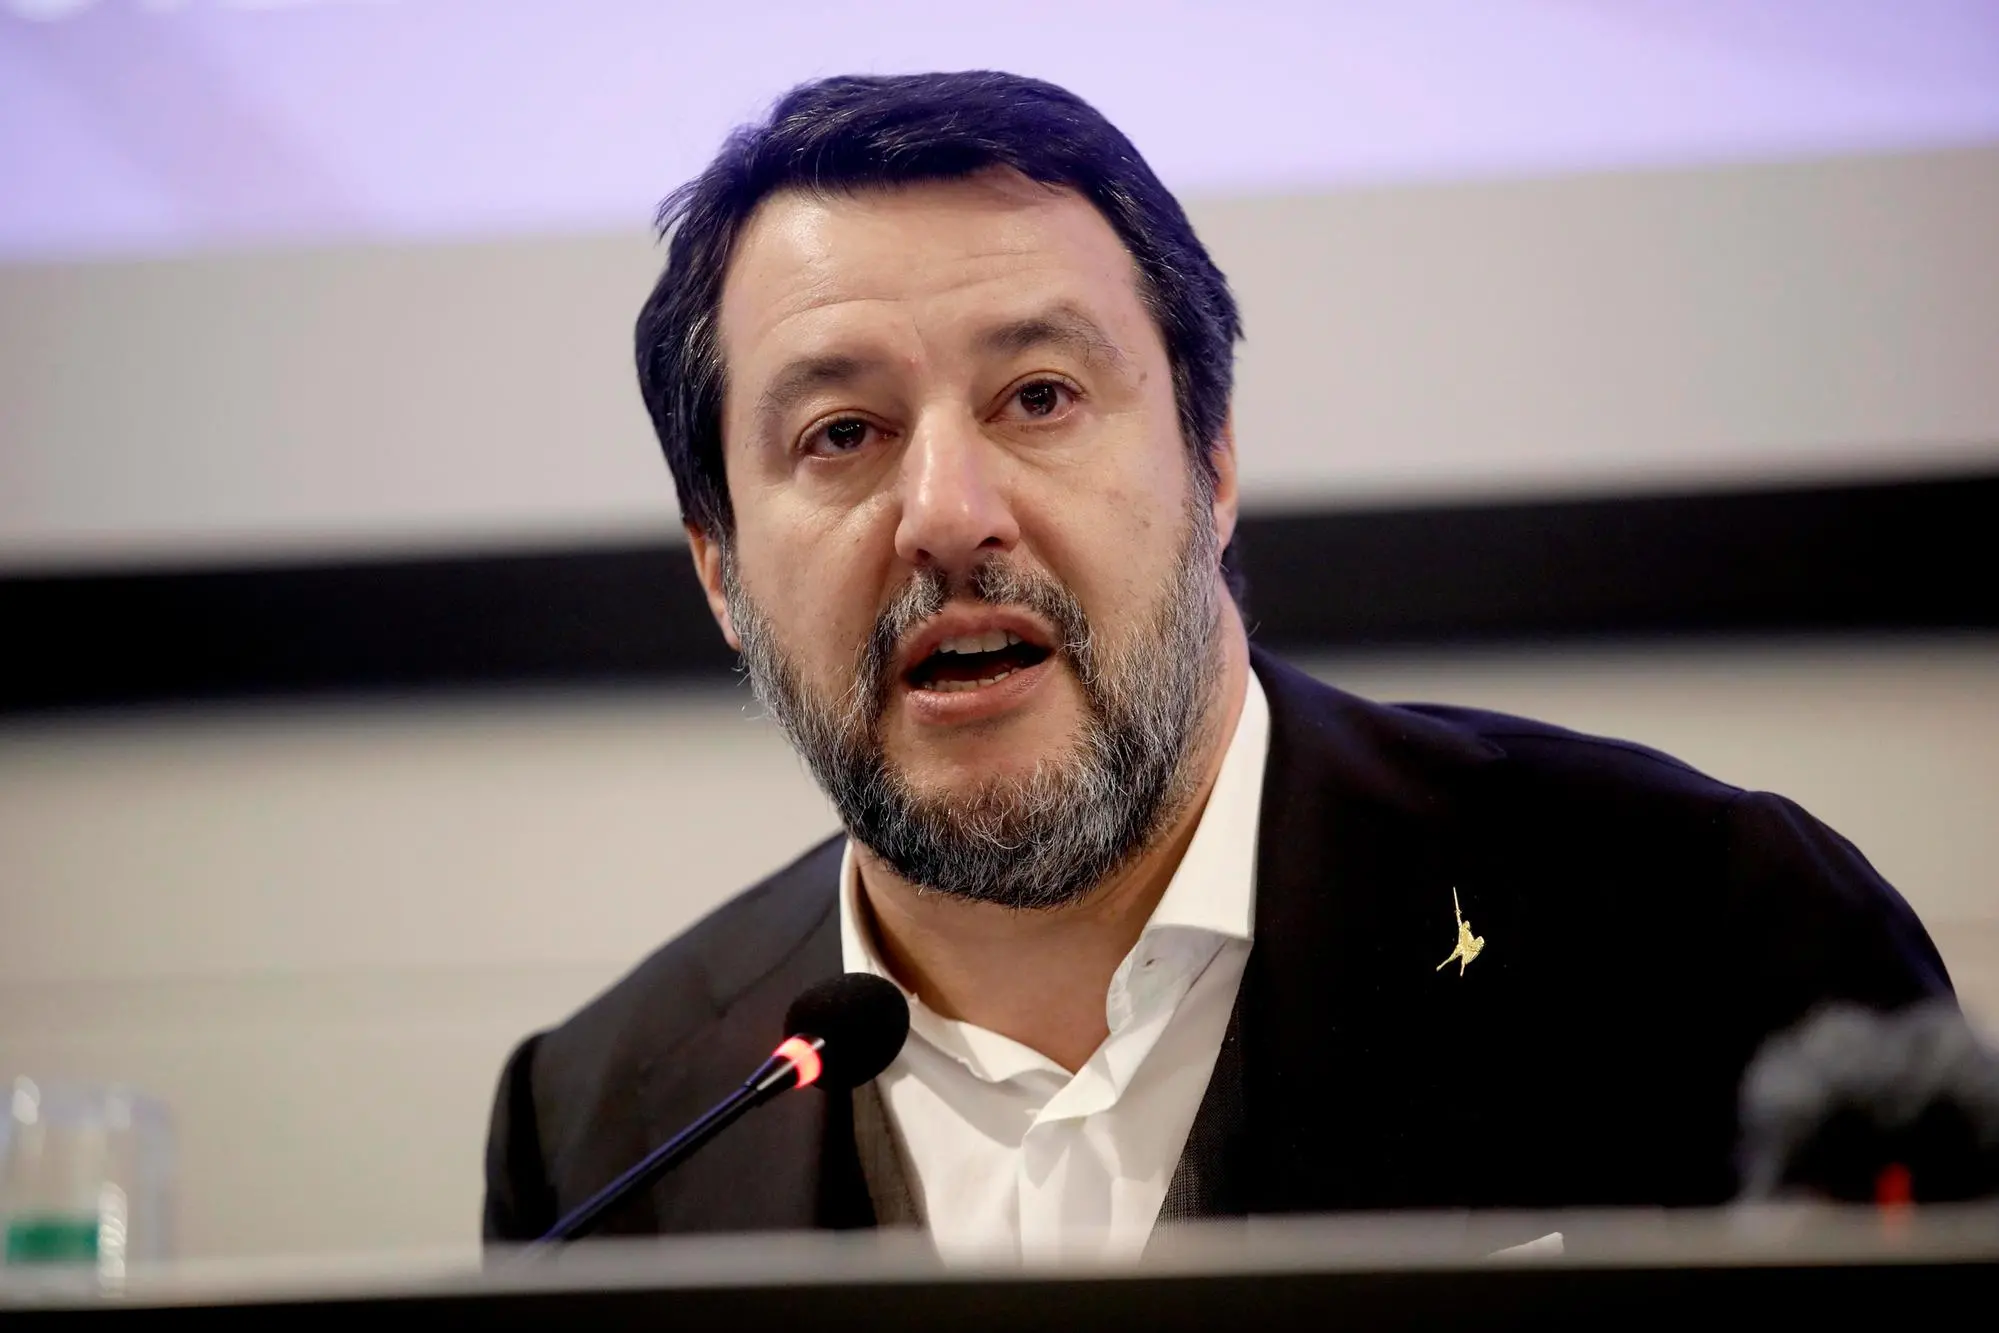 Il Ministro delle Infrastrutture Matteo Salvini in una foto d'archivio. ANSA/MOURAD BALTI TOUATI